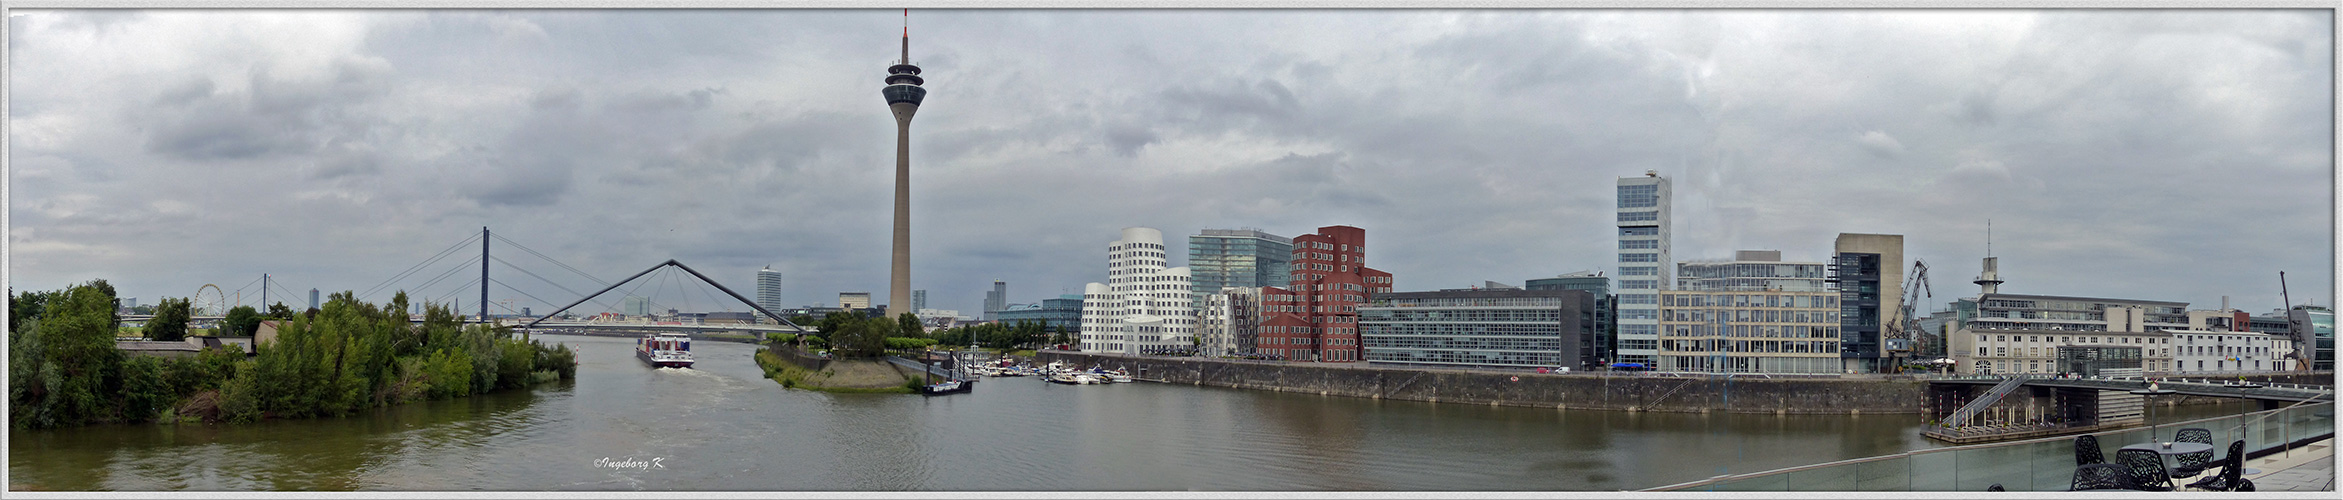 Düsseldorf - Medienhafen - Panorama